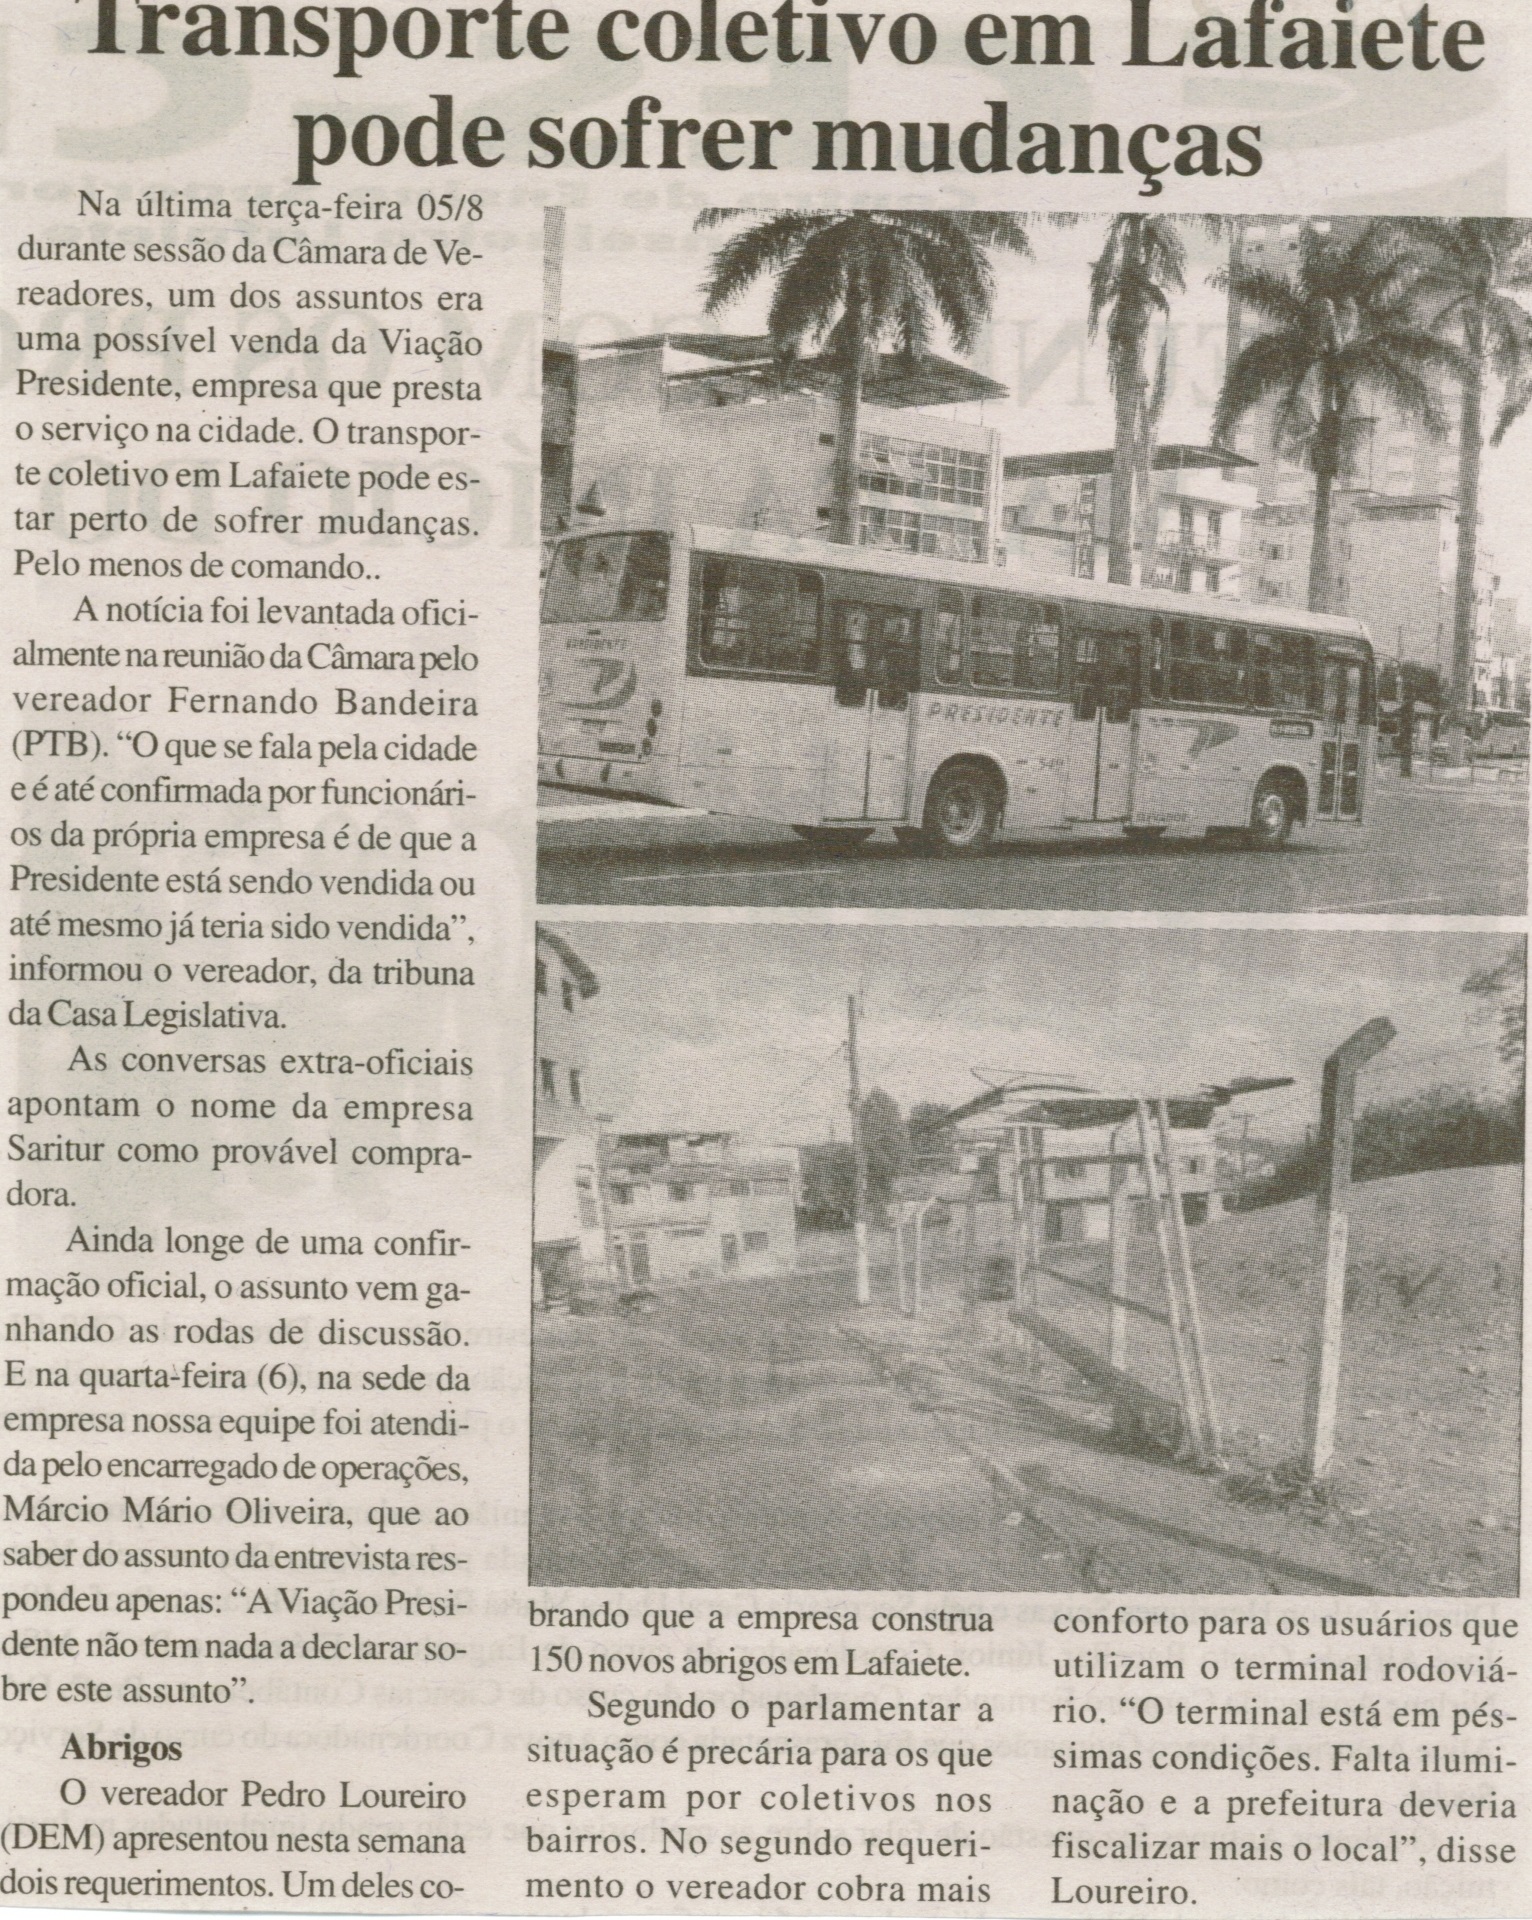 Transporte coletivo em Lafaiete pode sofrer  mudanças. Jornal Expressão Regional, Conselheiro Lafaiete, 09 ago. 2014, p. 6.